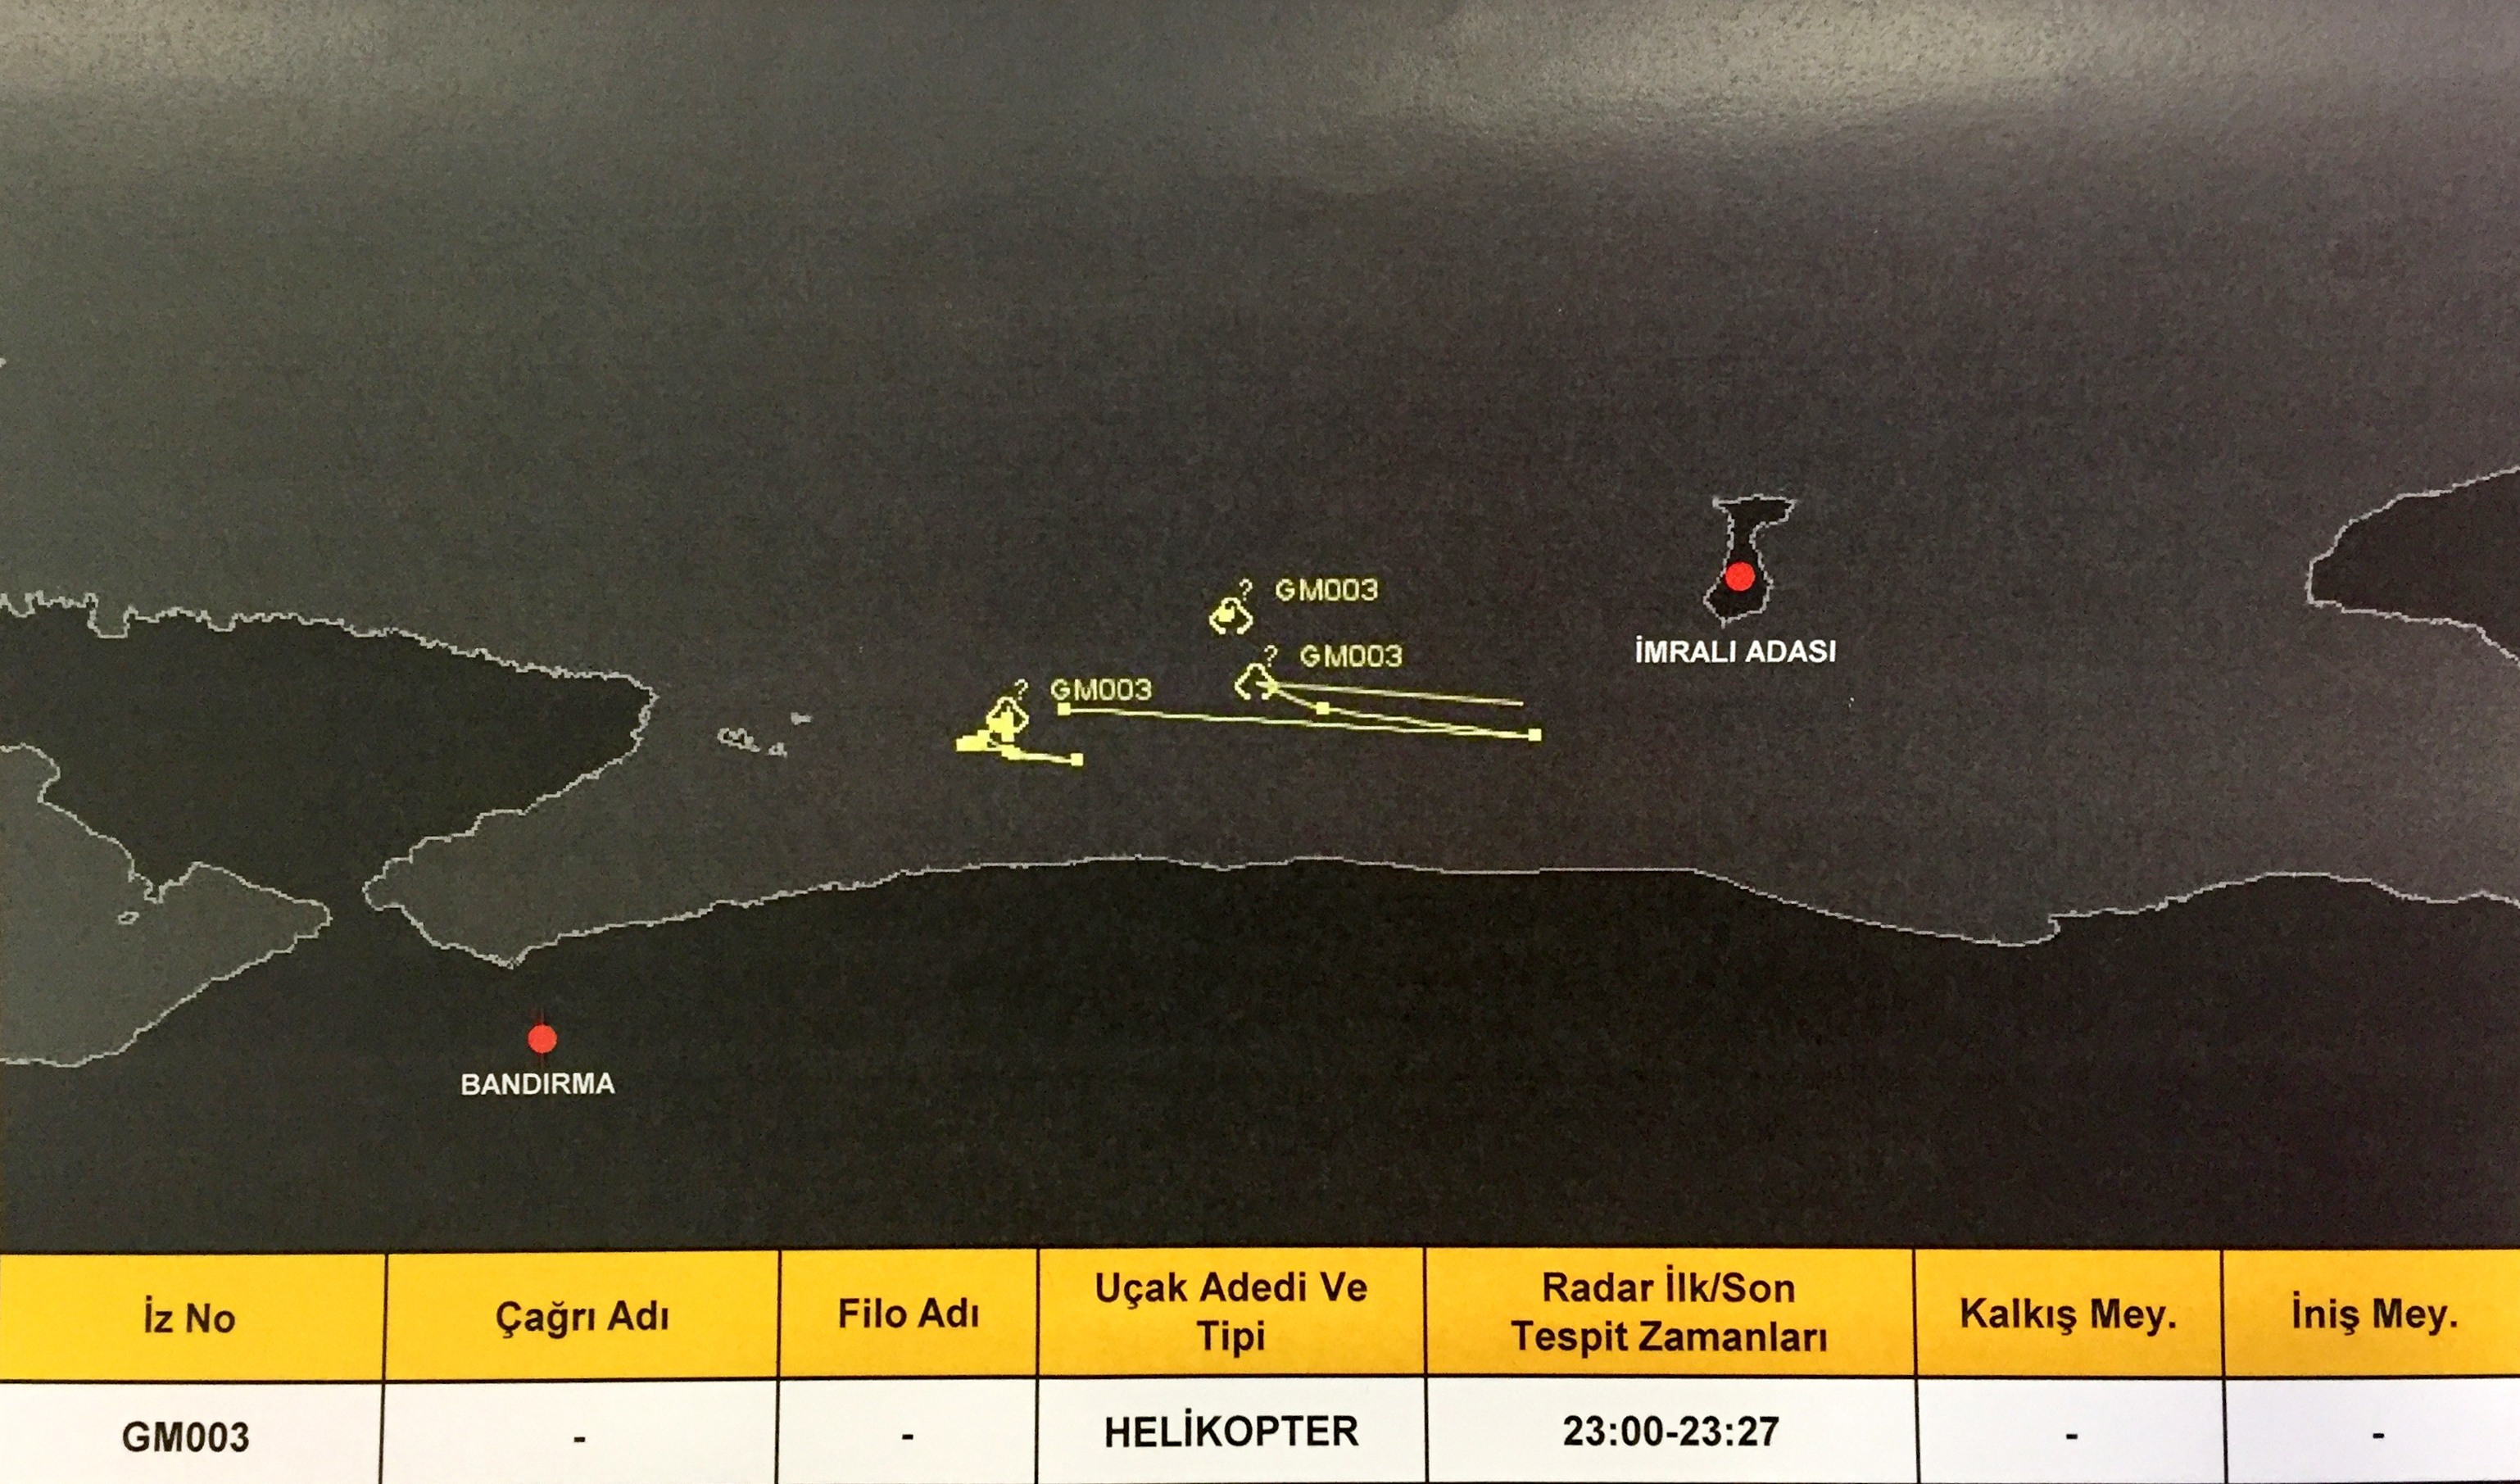 تمّ إثبات تحليق الطائرات المروحية بكثافة في محيط جزيرة إيمرالي. وظهرت تسجيلات لمروحيات مختلفة وهي تحلّق فوق جزيرة إيمرالي في توقيتات مختلفة.